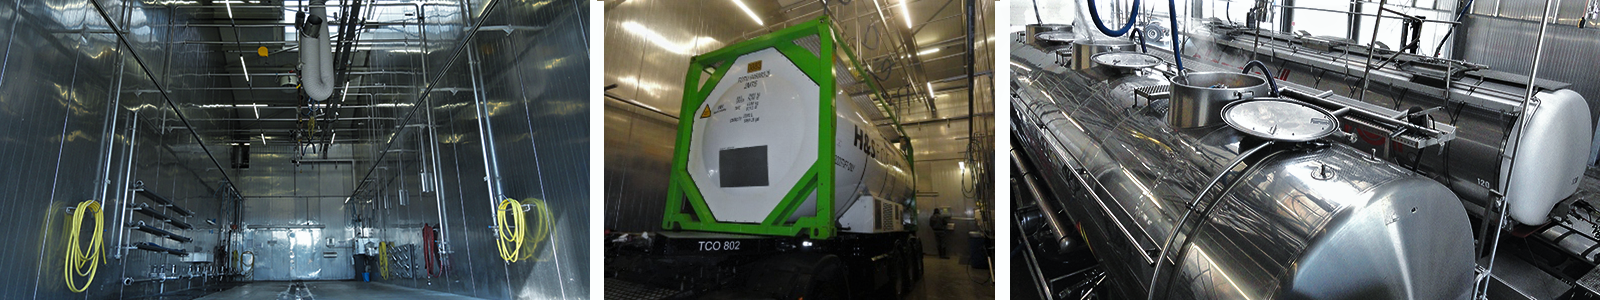 Truckcleaning Venlo verwendet elektrische Kesselkräne mit JP-Flüssigkeit zur Reinigung von LKW-Tanks.